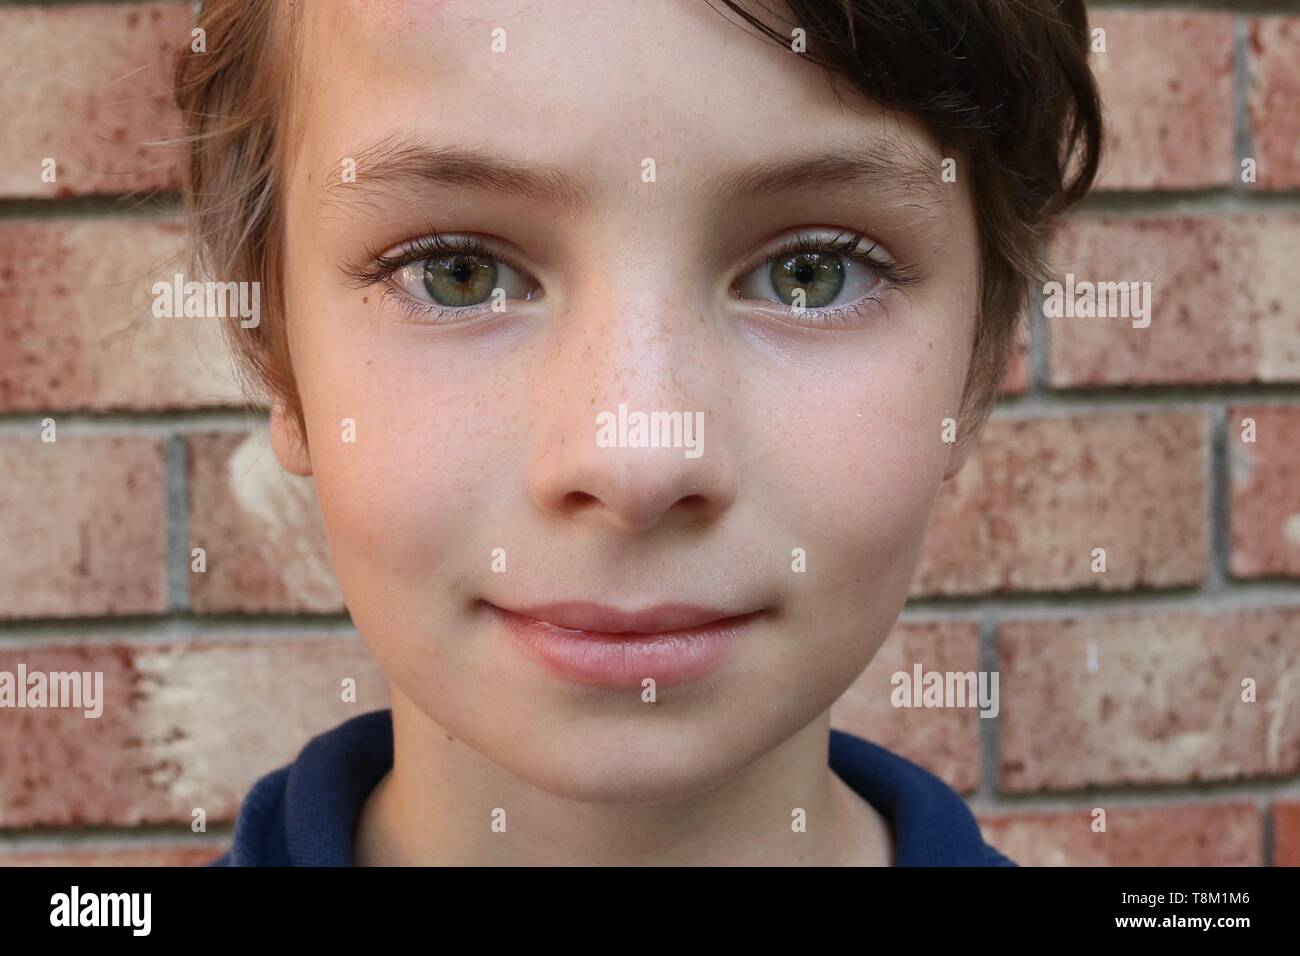 Ritratto di un bambino con grandi occhi verdi di fronte a un muro di mattoni Foto Stock